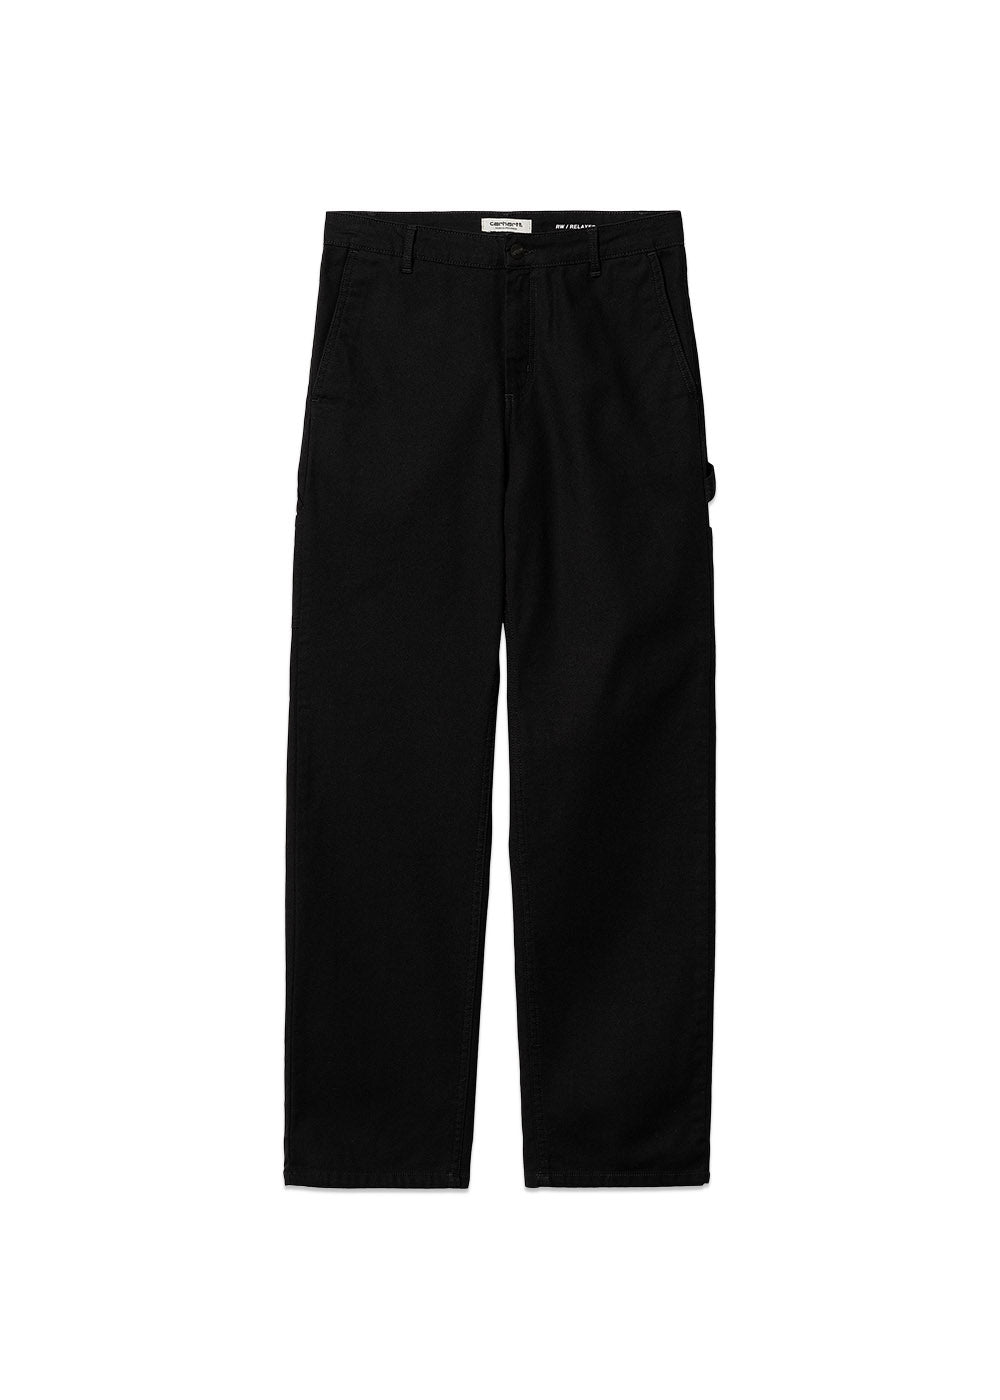 Carhartt WIP's W' Pierce Pant Straight - Black Rinsed. Køb bukser her.